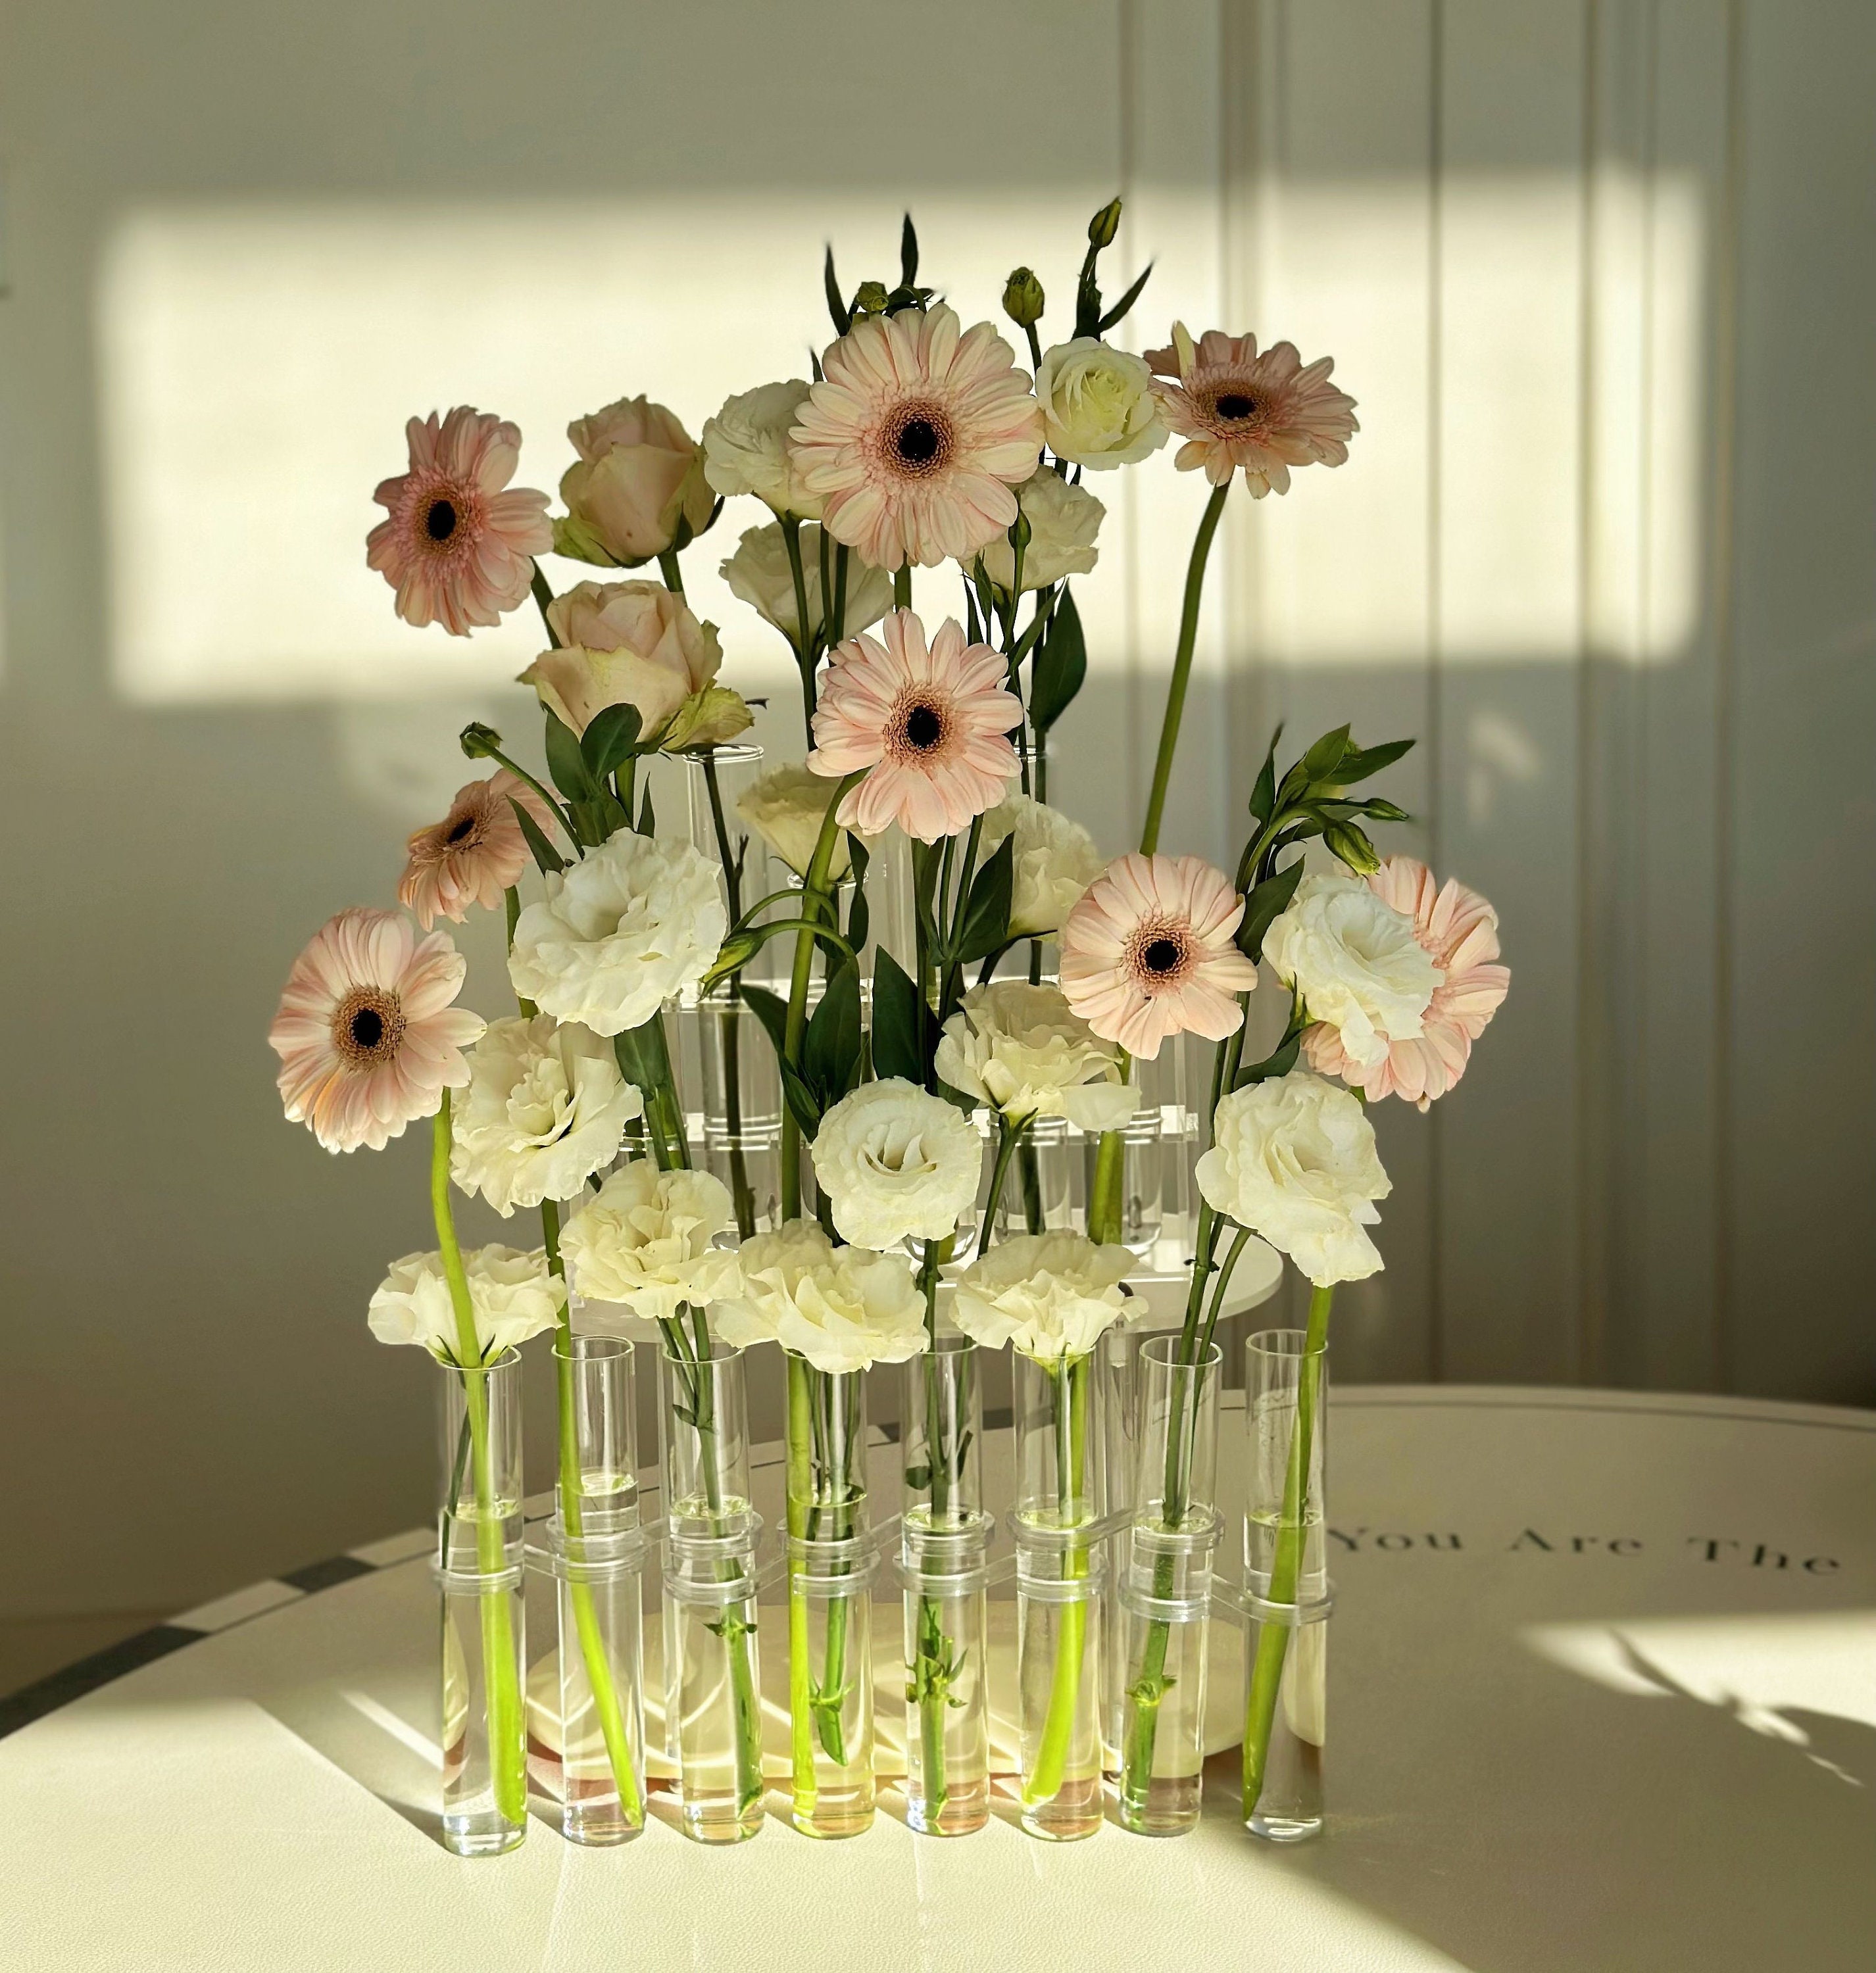 Hinged Flower Vase Glass Vase Tube Creative Plant Holder For Living Room  Office